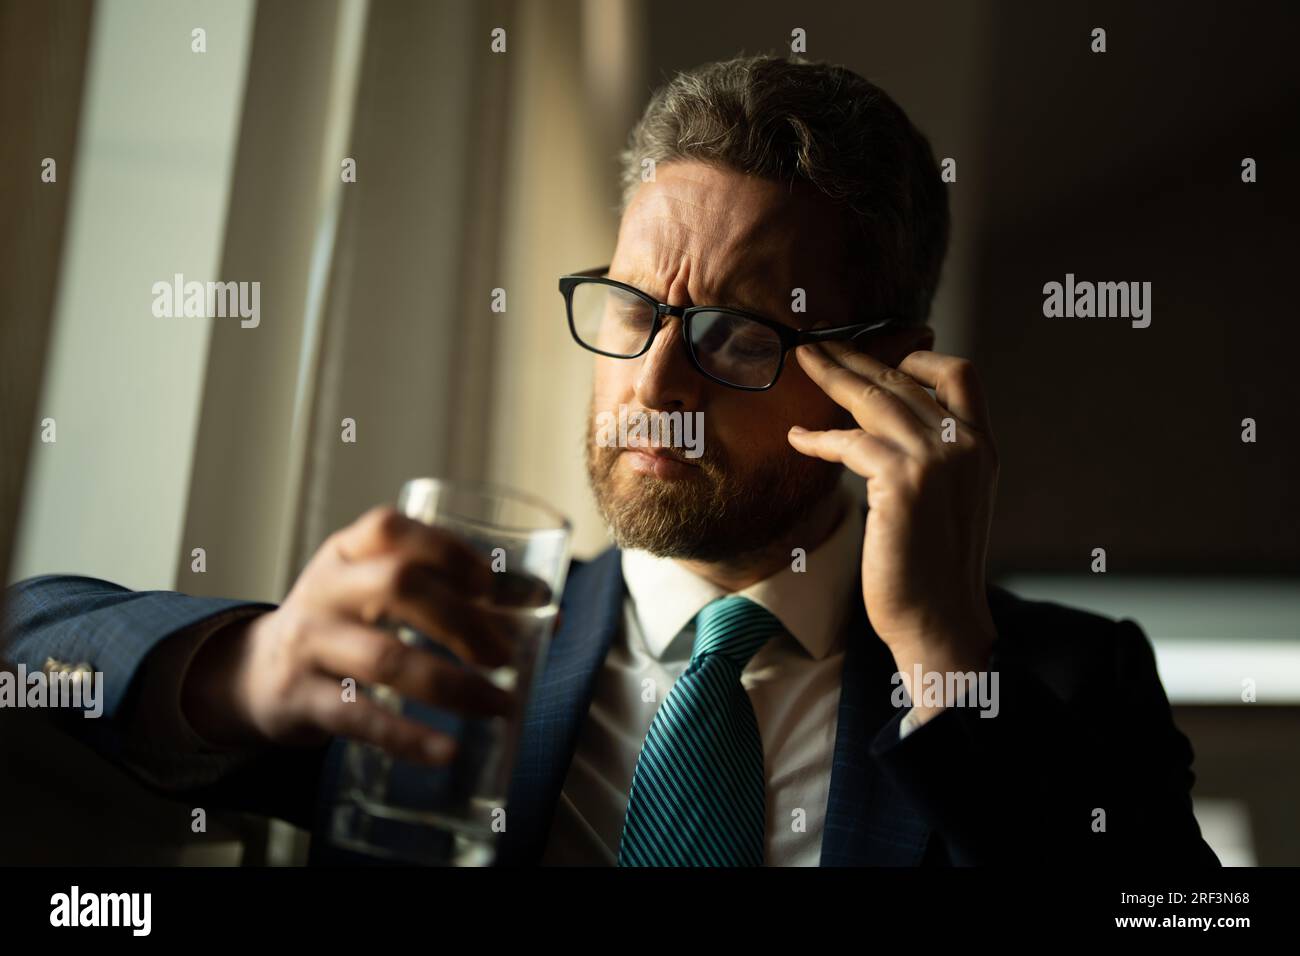 L'uomo stanco sente dolore tenendo gli occhiali strofinare asciutto irritato gli occhi affaticati dal lavoro del computer, l'uomo stressato soffre di mal di testa cattiva visione problema della vista Foto Stock